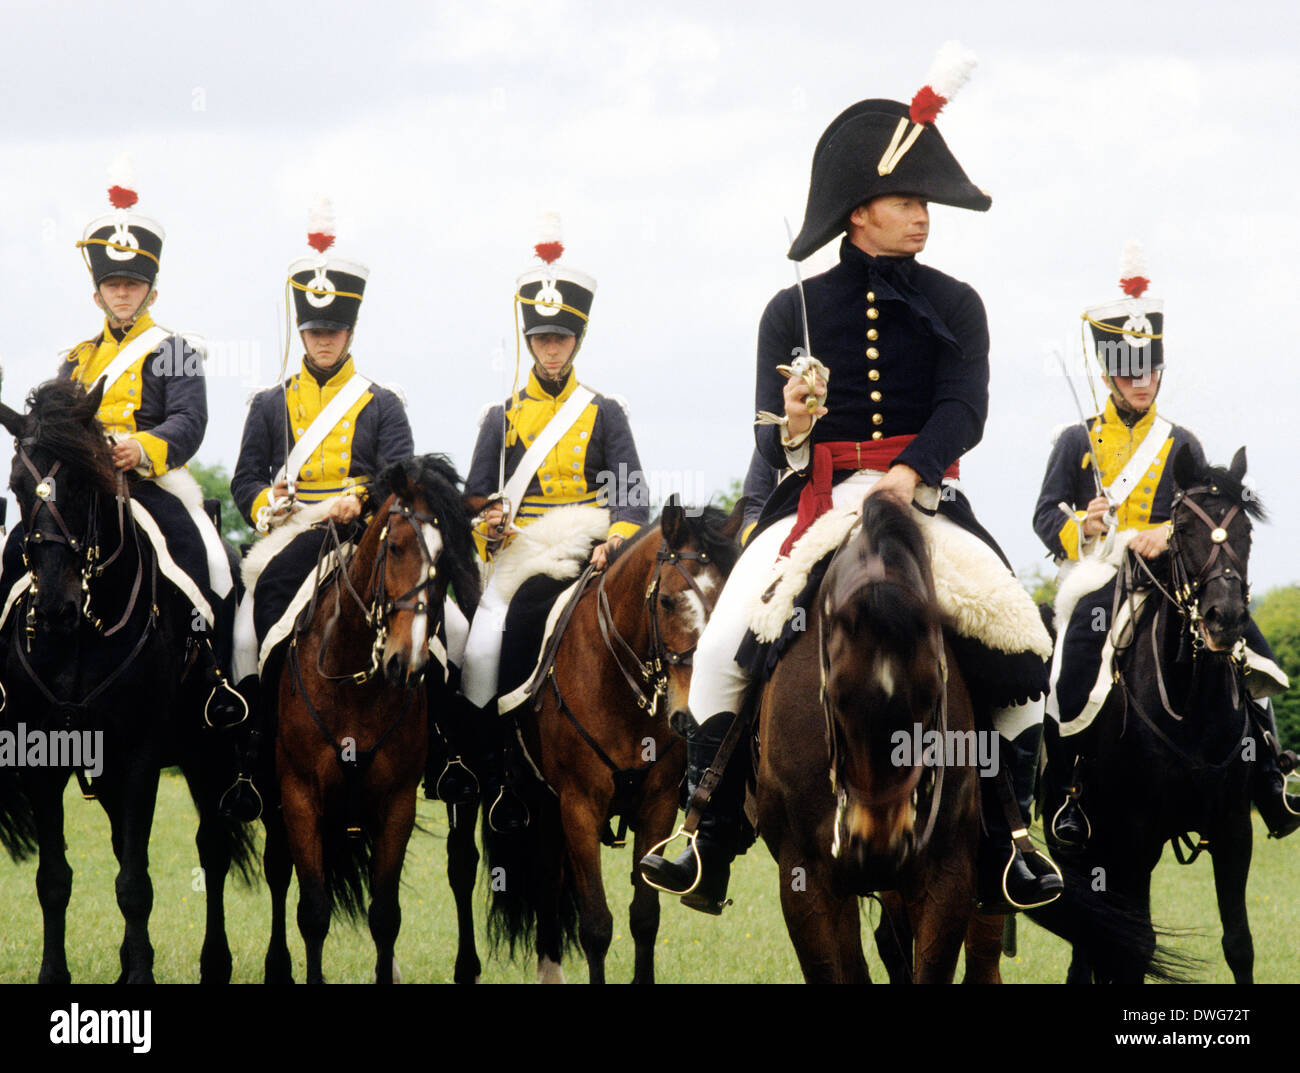 12º Regimiento de Dragones de luz con sables dibujado, c. En 1815, la recreación histórica soldado del ejército británico soldados de caballería uniformes uniformes sabre caballo Inglaterra Foto de stock